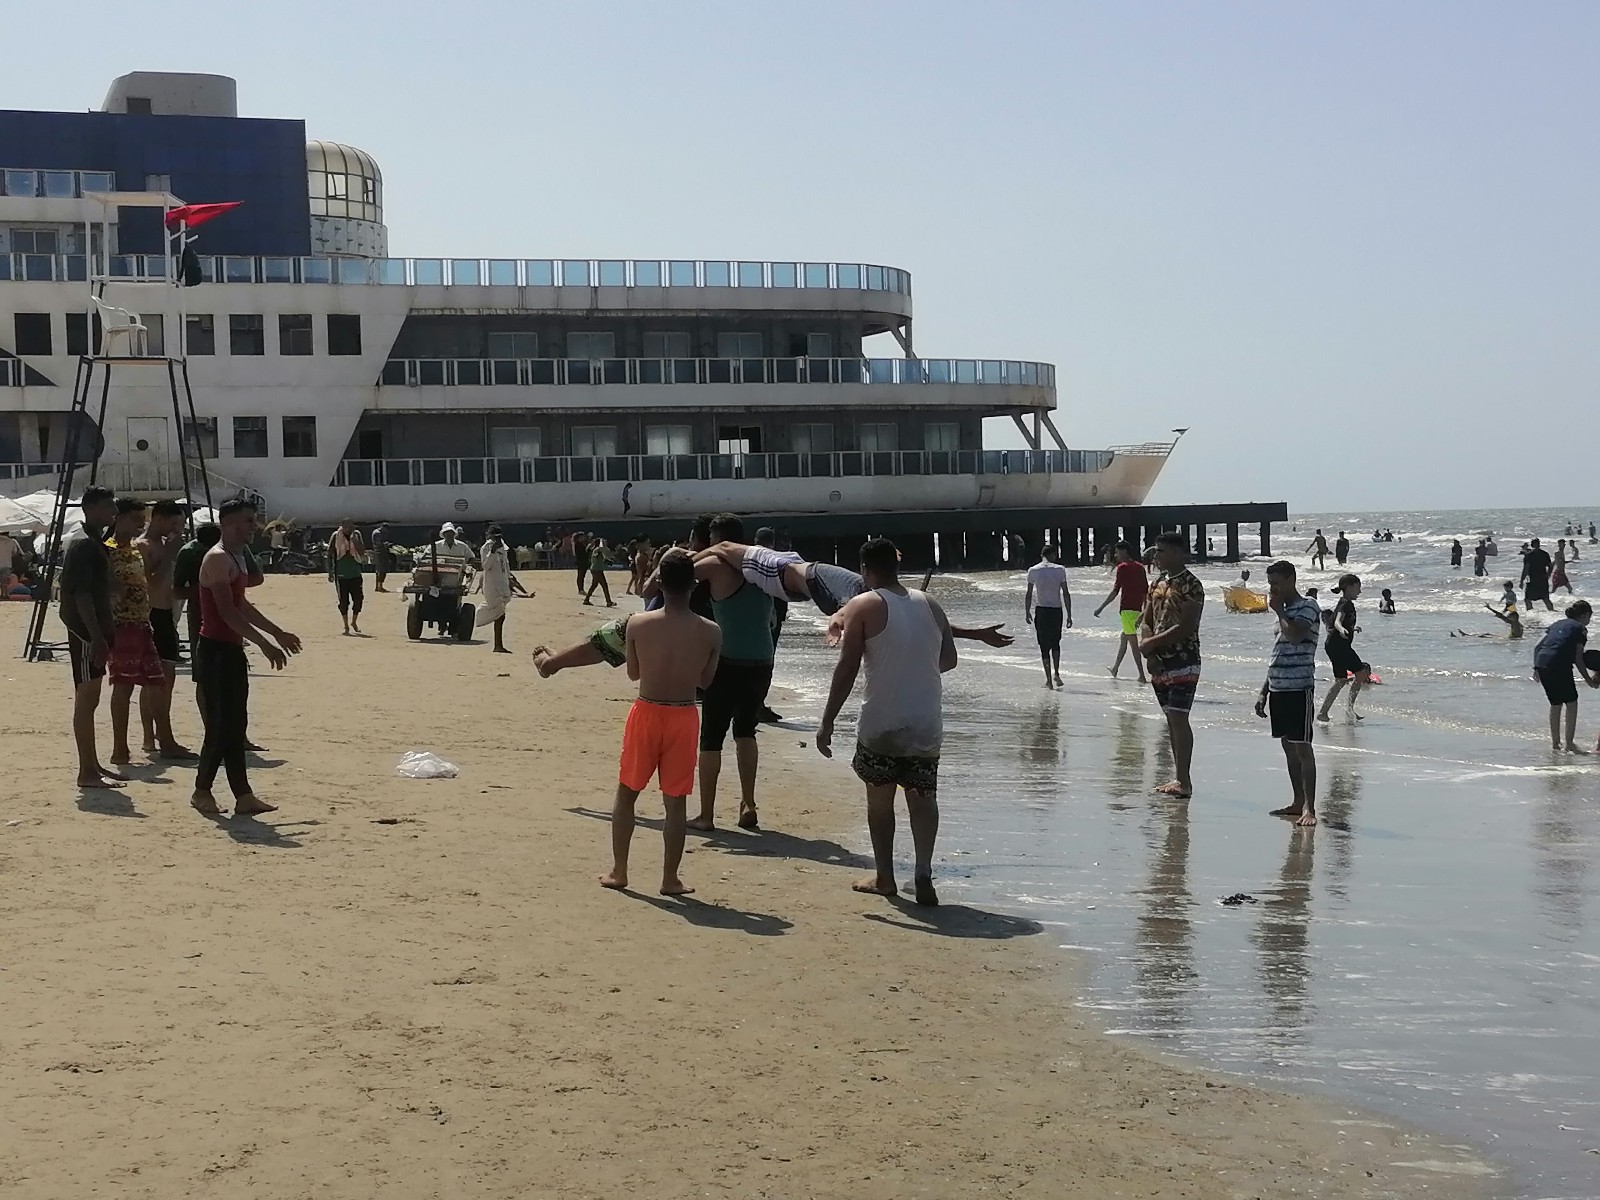 لعب الشباب على شاطئ بورسعيد